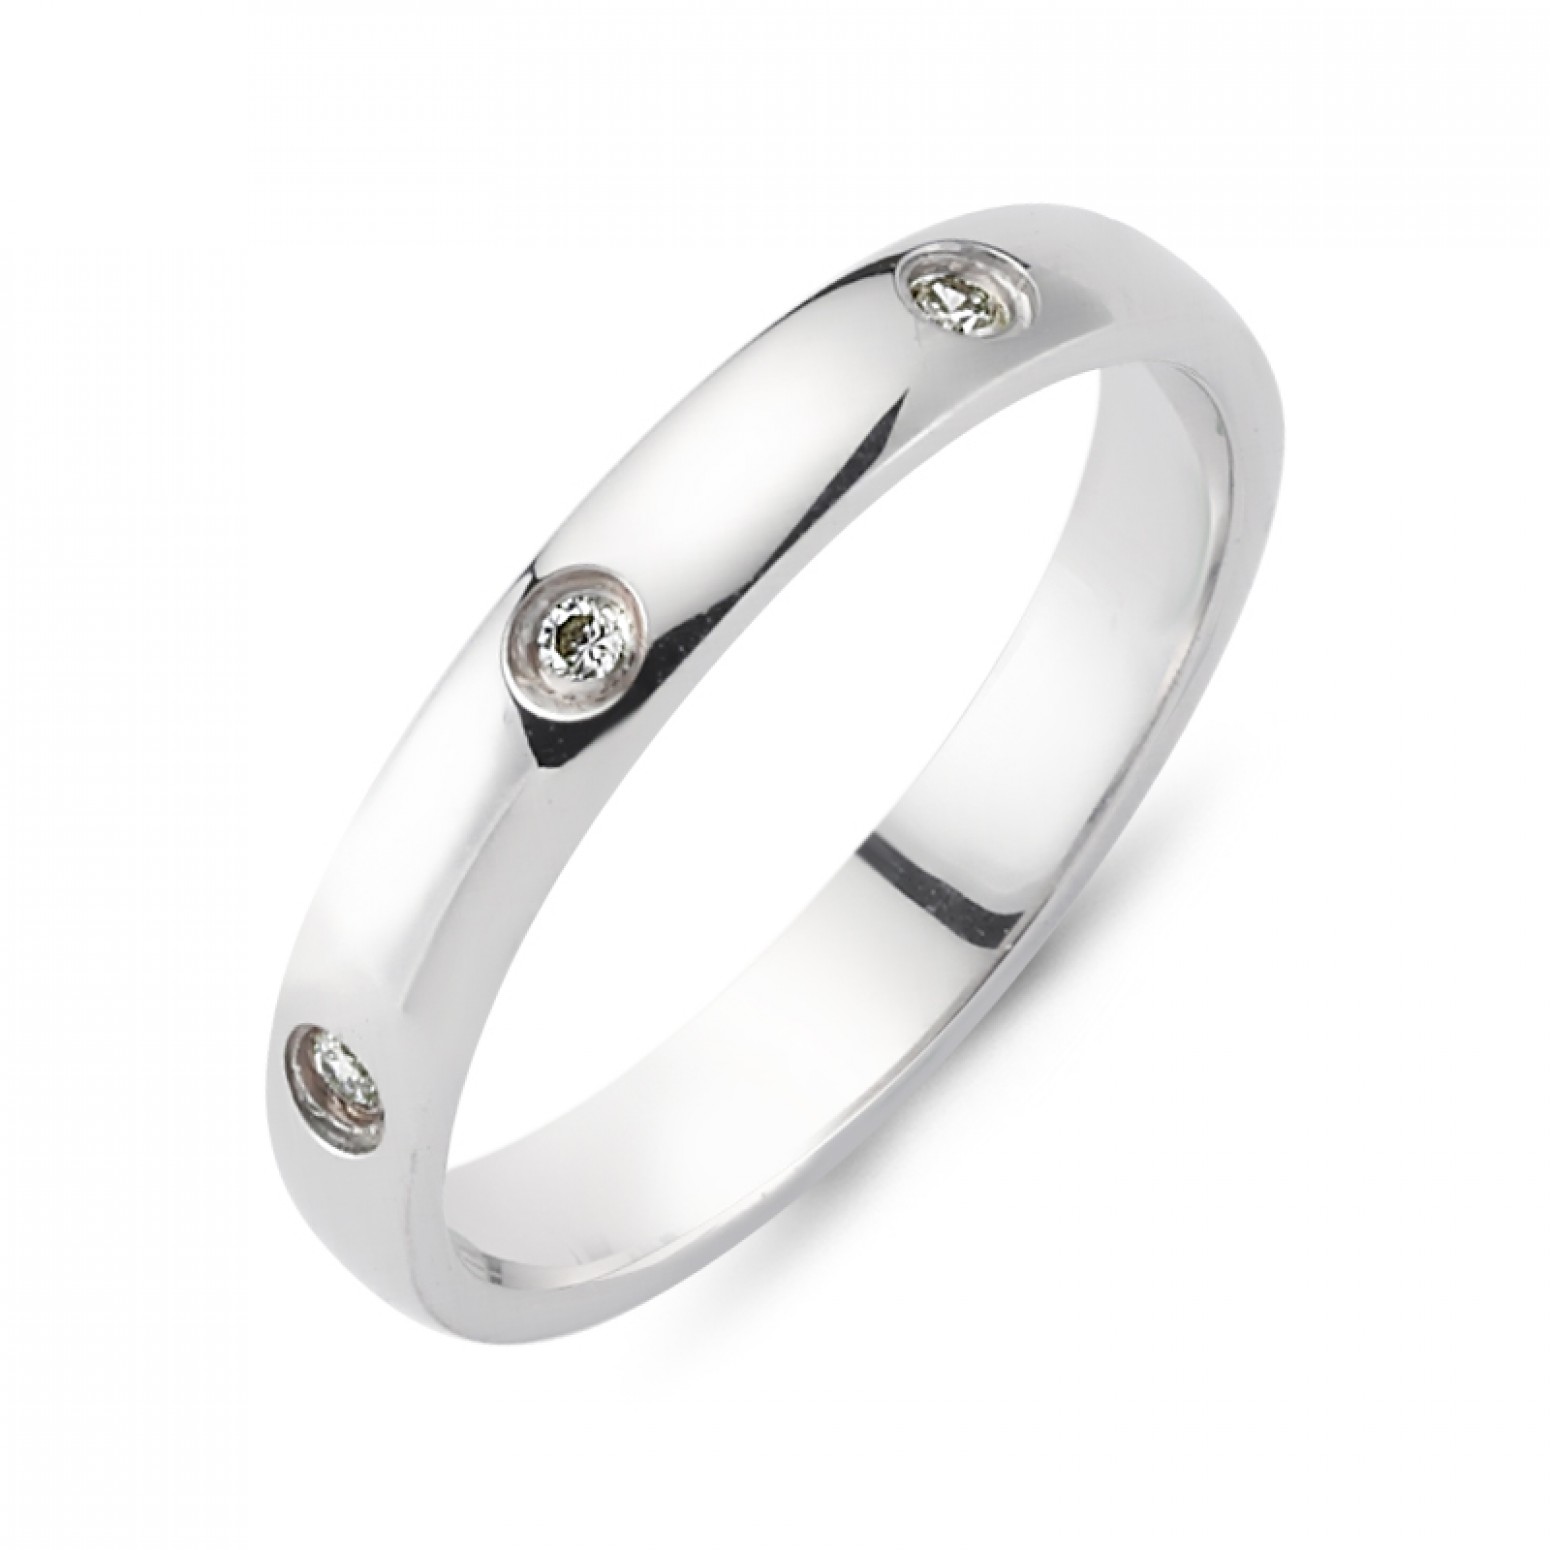 Chrilia wedding rings in white gold, K14, pair da2776 WEDDING RINGS Κοσμηματα - chrilia.gr